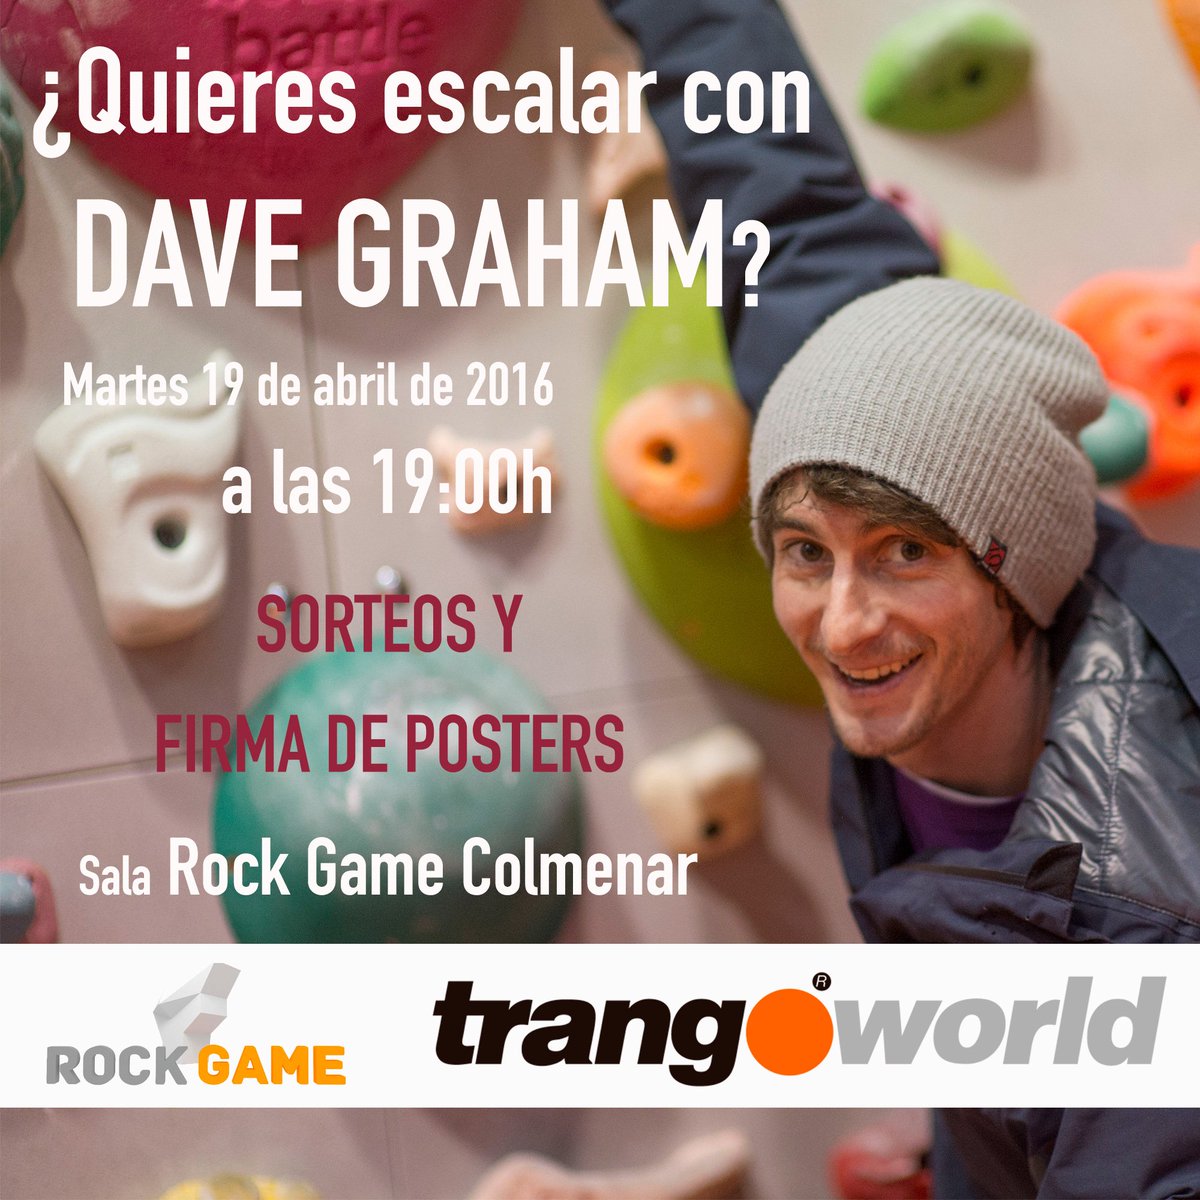 Hoy en la sala RockGame Colmenar escala con @Dave_Graham_. Con firma de posters y sorteo de regalos #trangoworld